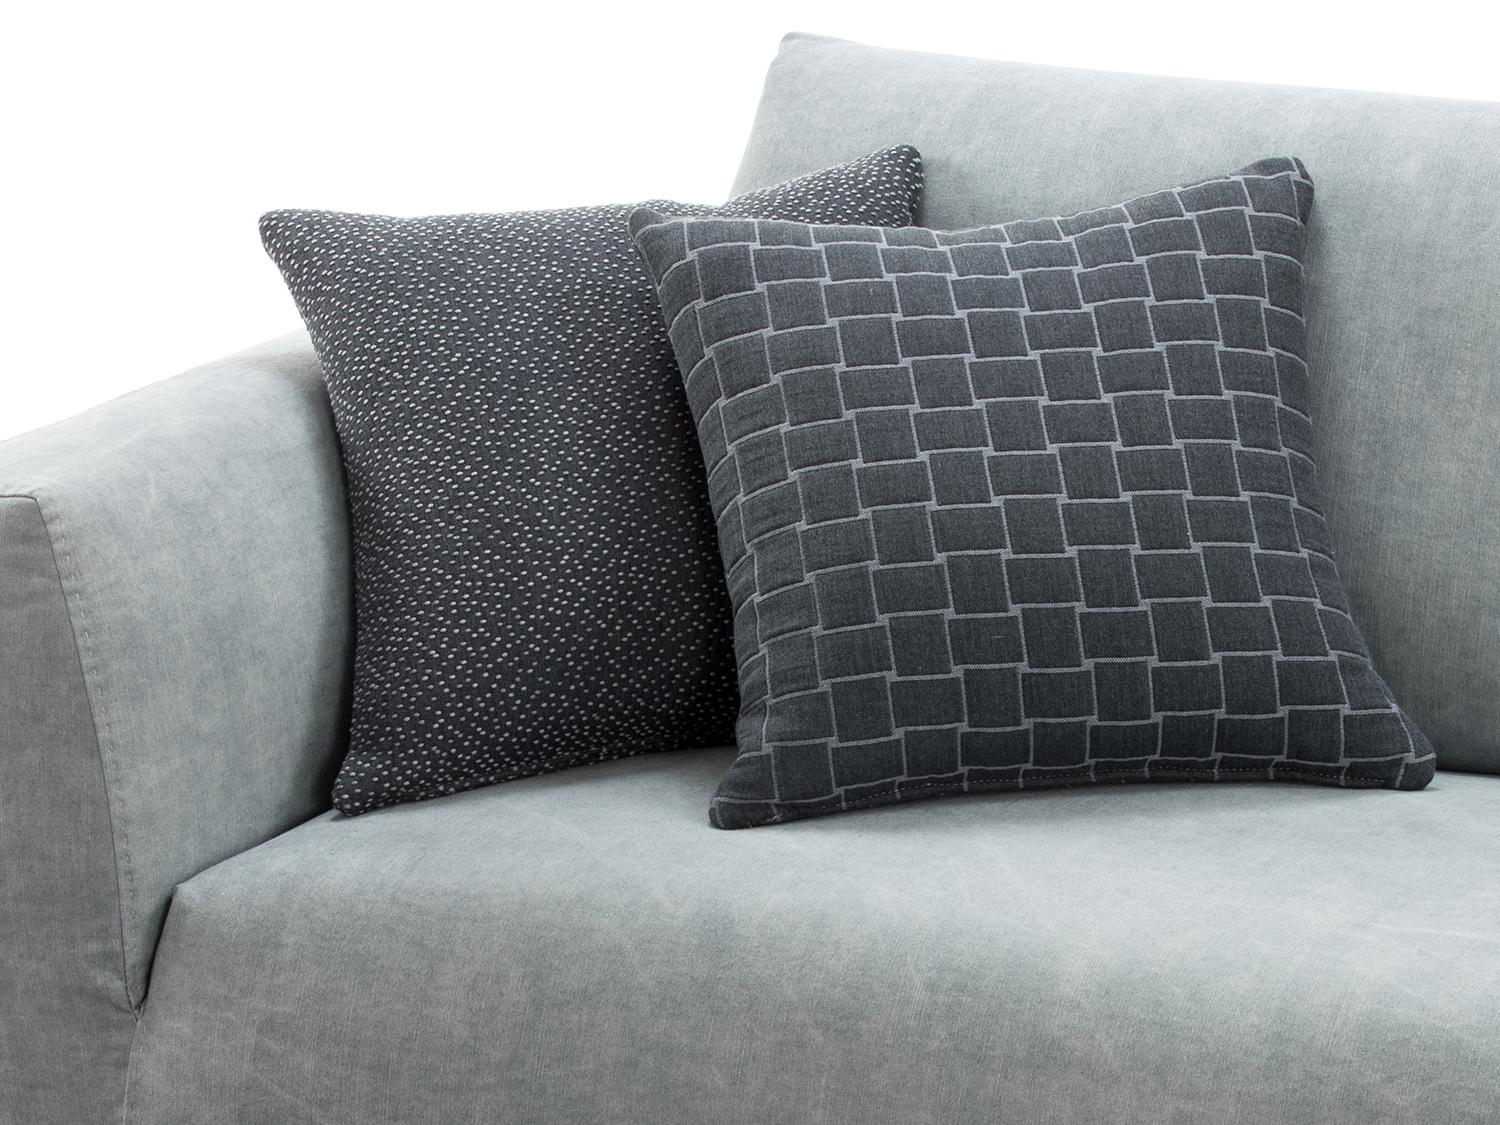 Cuscini grigio scuro su divano grigio chiaro